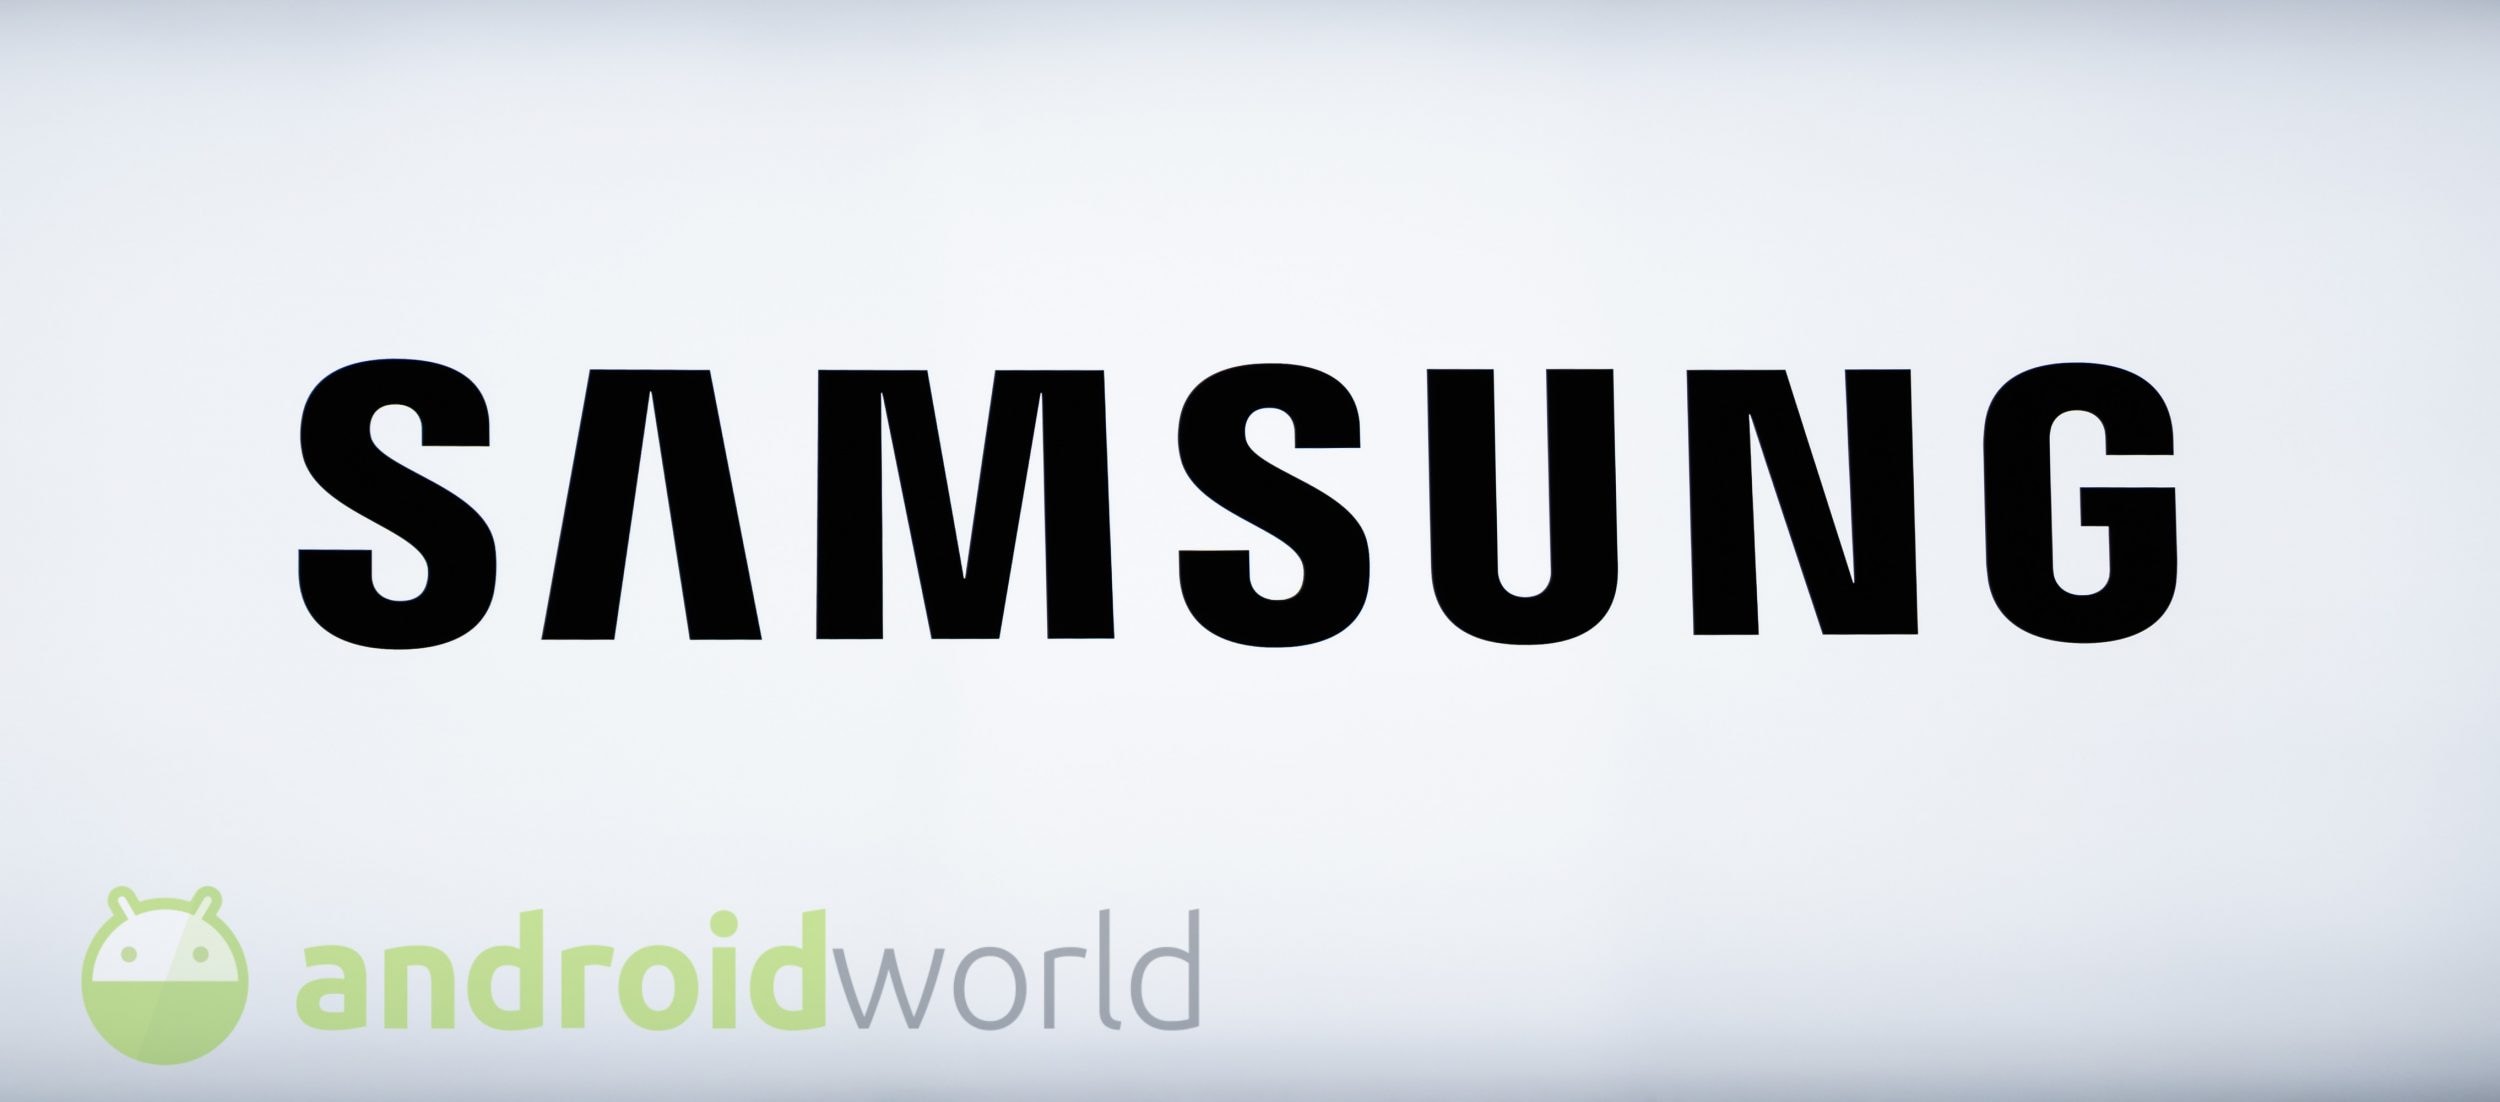 Non è più possibile sincronizzare le personalizzazioni della Tastiera Samsung con la One UI 2.1, a voi dispiace? (aggiornato: conferma definitiva)